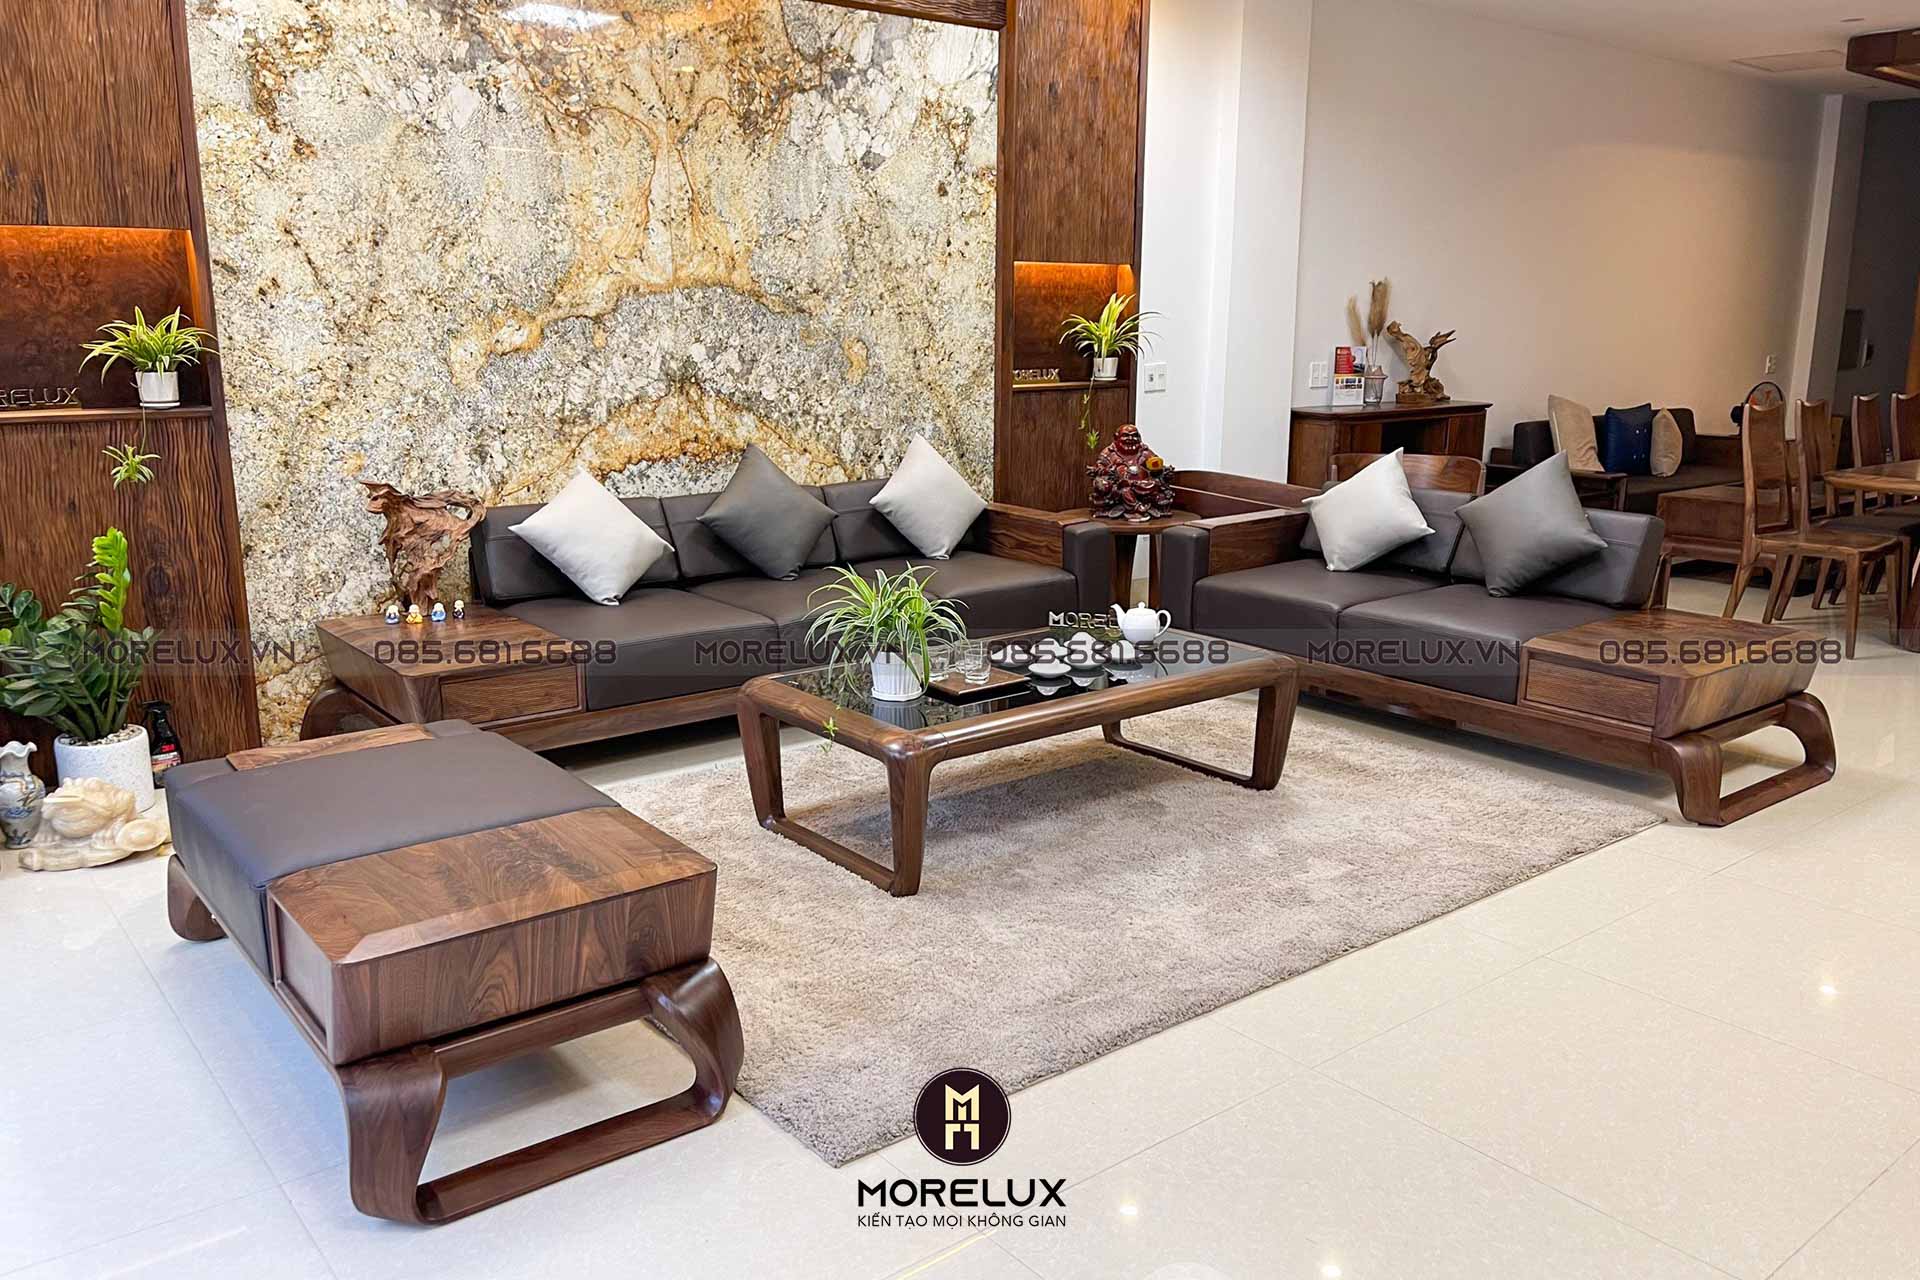 sofa go oc cho sf02 2 - Tổng hợp mẫu bàn ghế sofa gỗ chữ U cao cấp cho phòng khách hiện đại